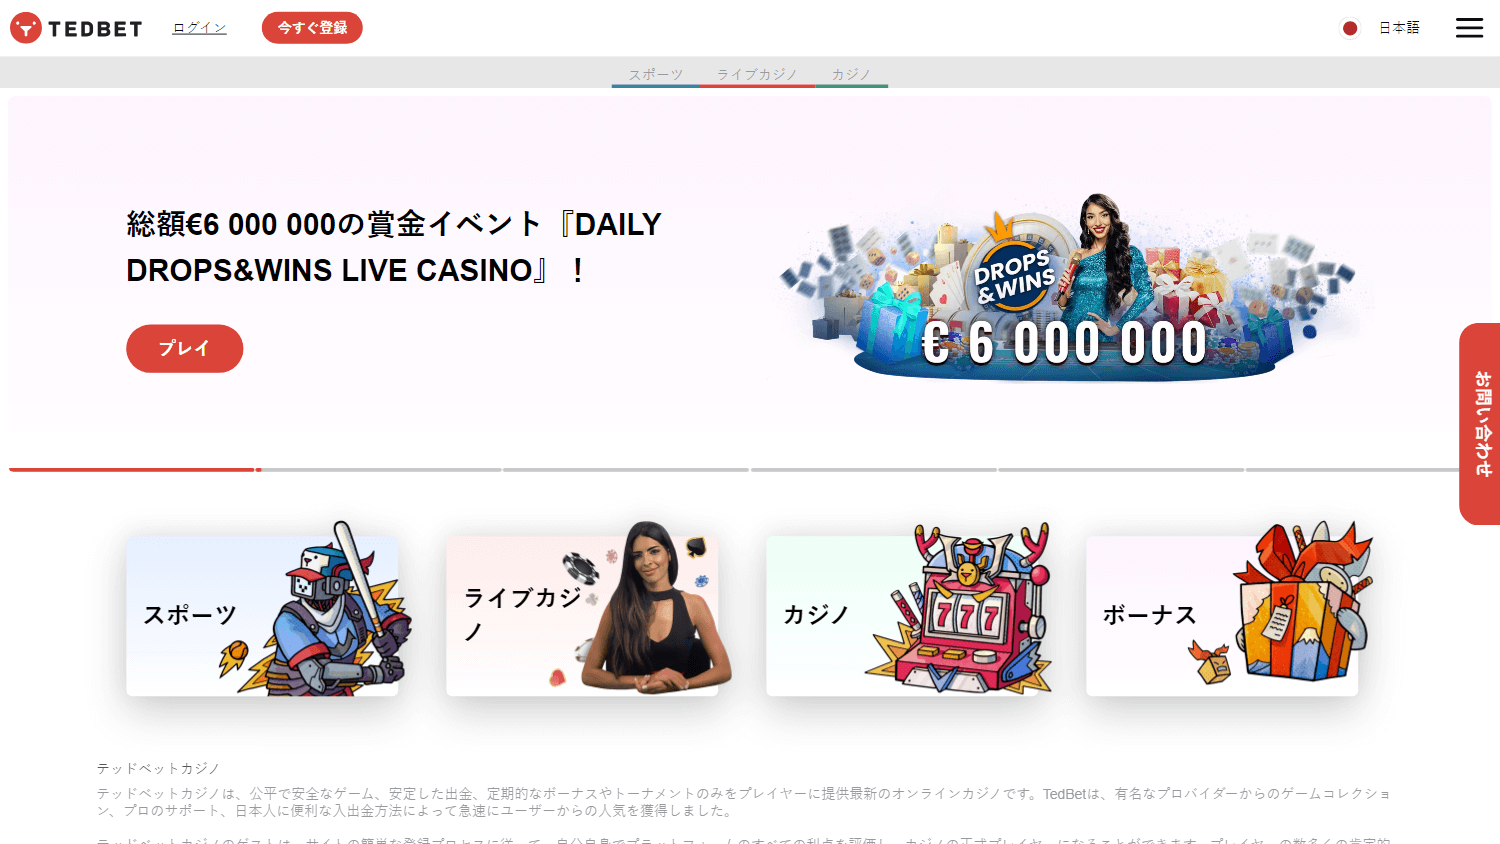 tedbet_casino_homepage_desktop